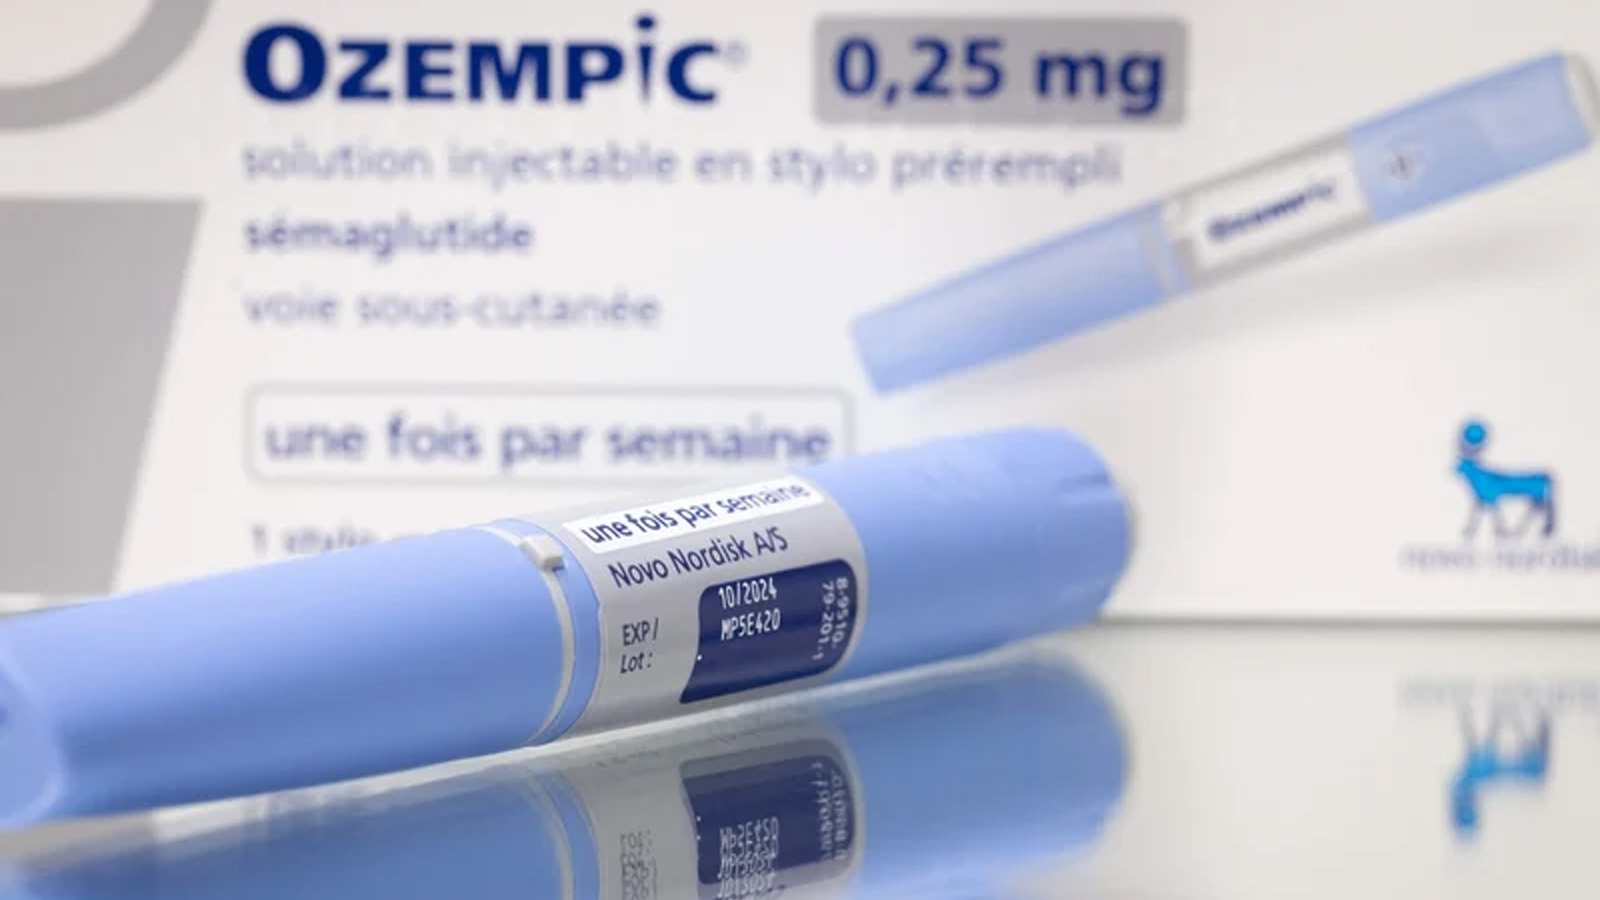 دواء Ozempic المضاد لمرض السكري حظي باهتمام كبير لخصائصه بمحاربة السمنة. وهي ظاهرة تسبب نقصًا في الإمدادات وتثير قلق الأطباء